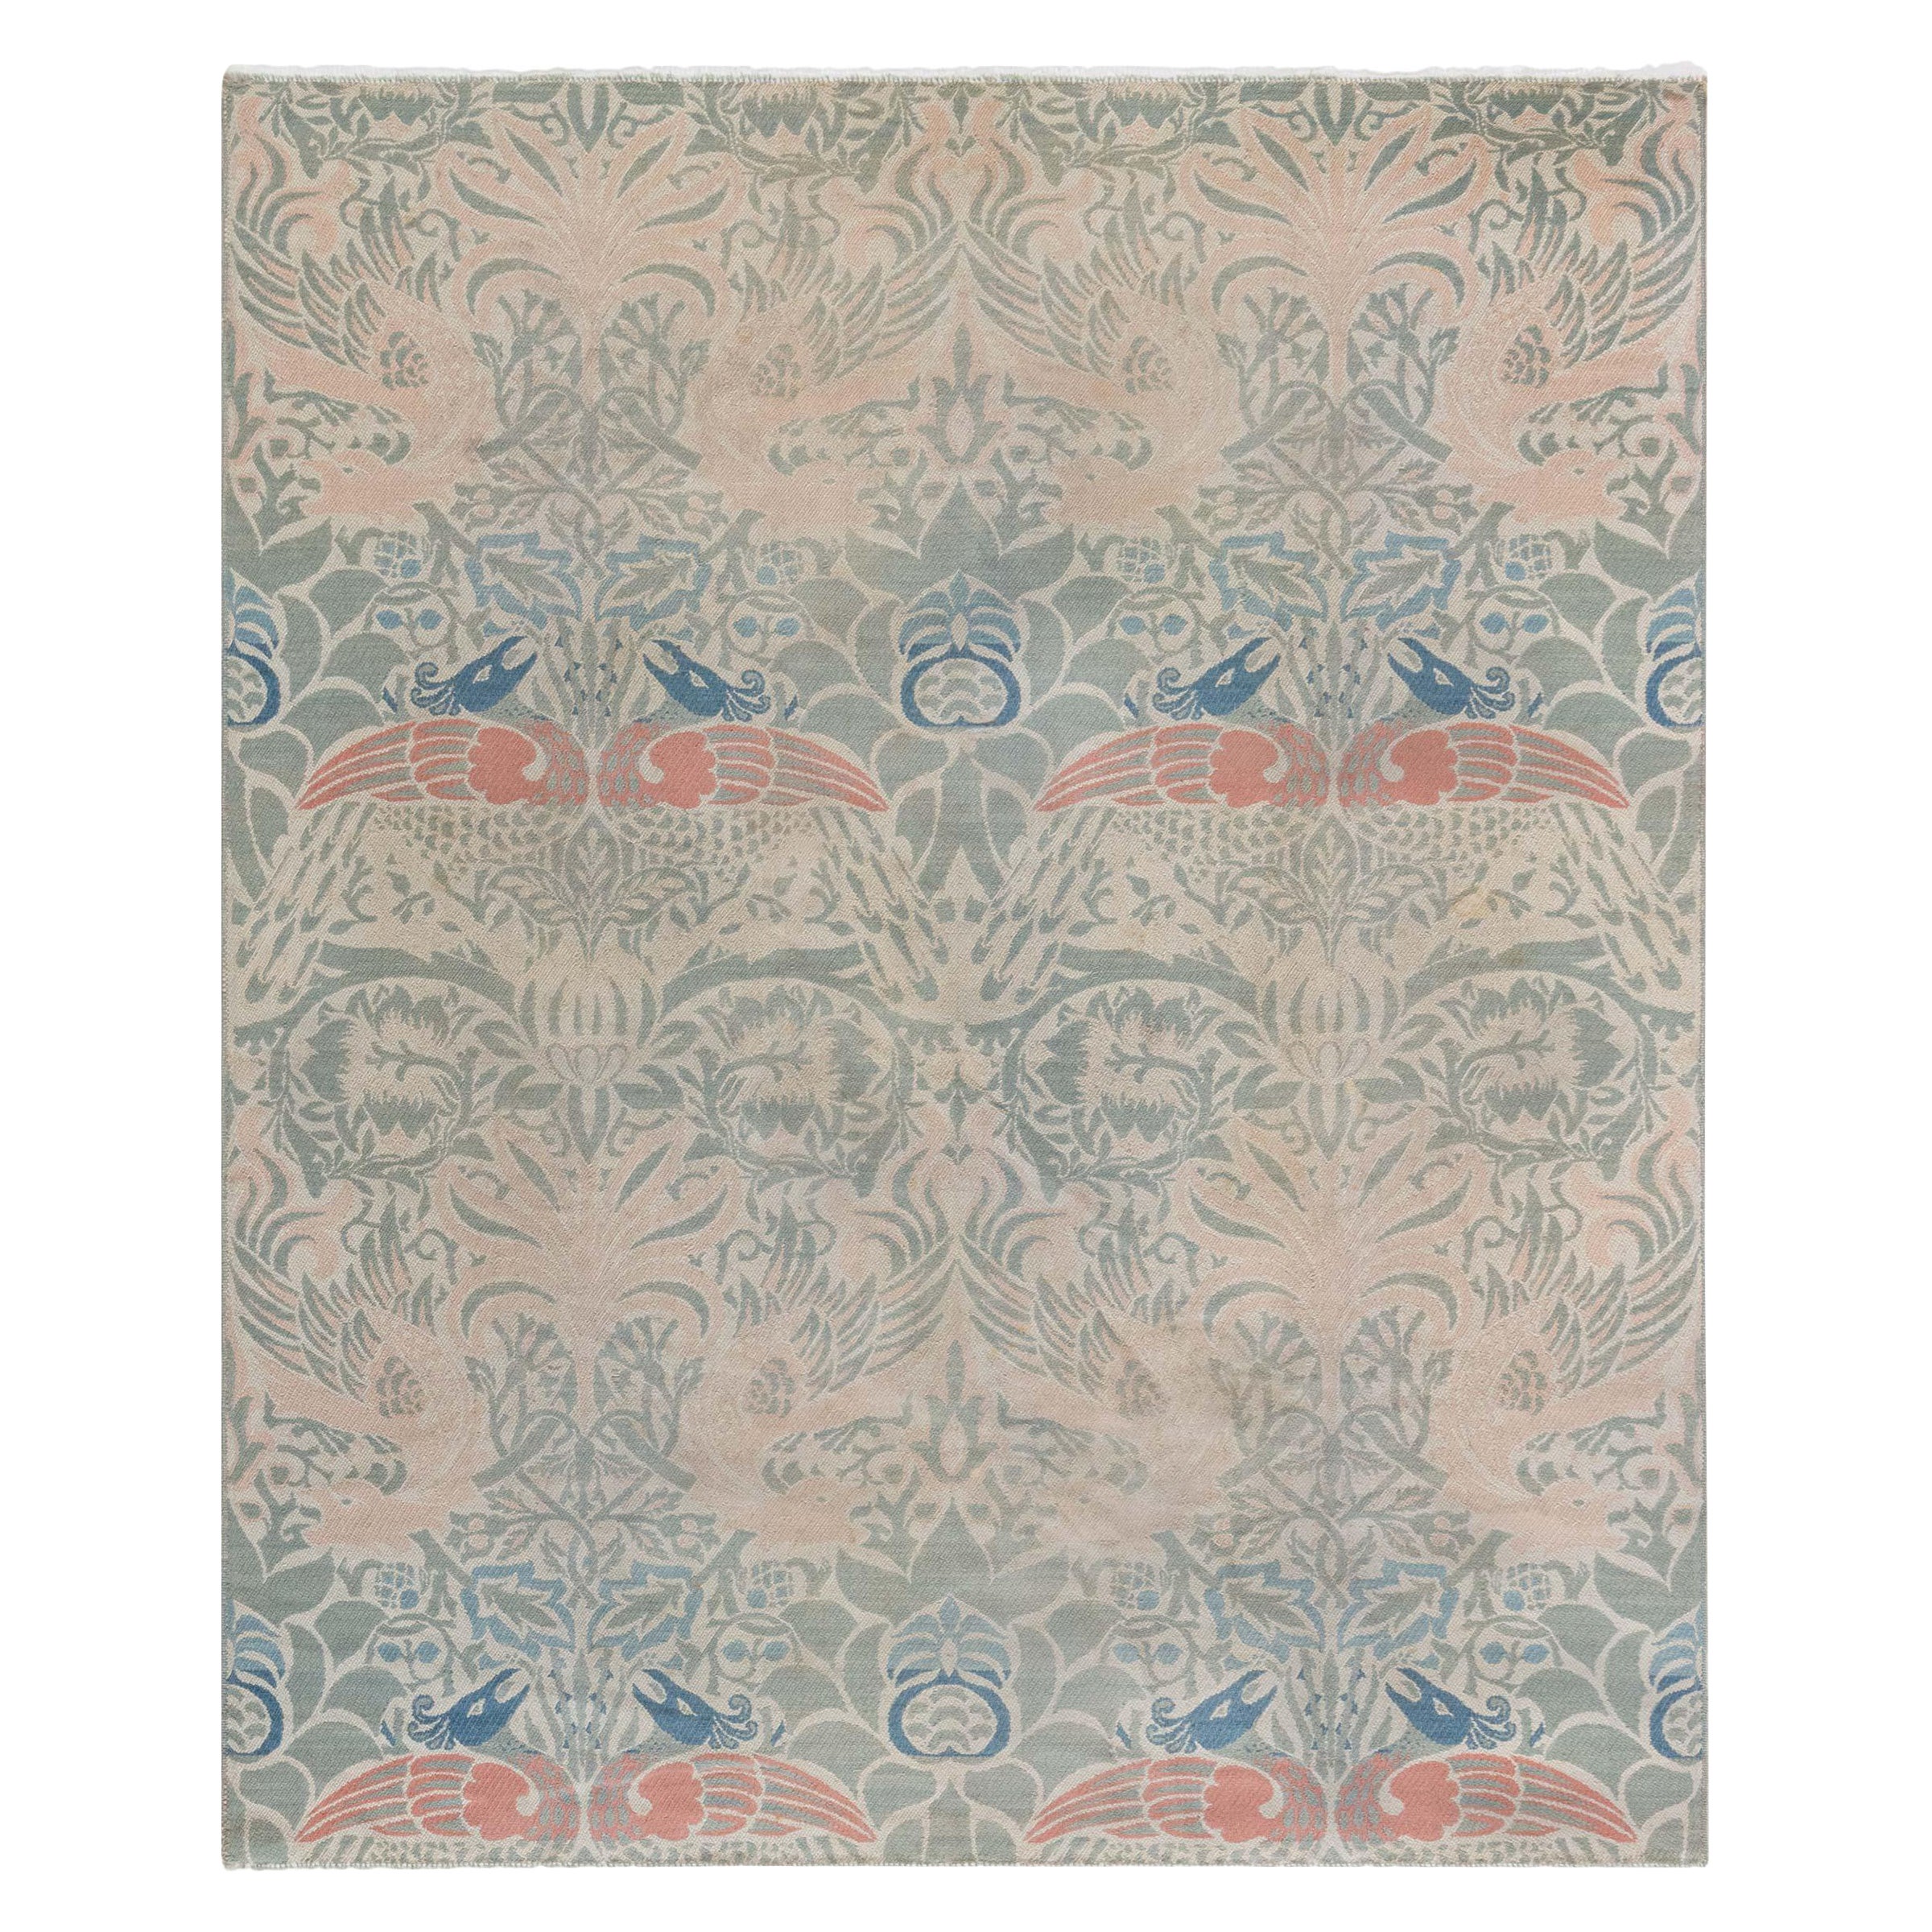 1900er William Morris Textil